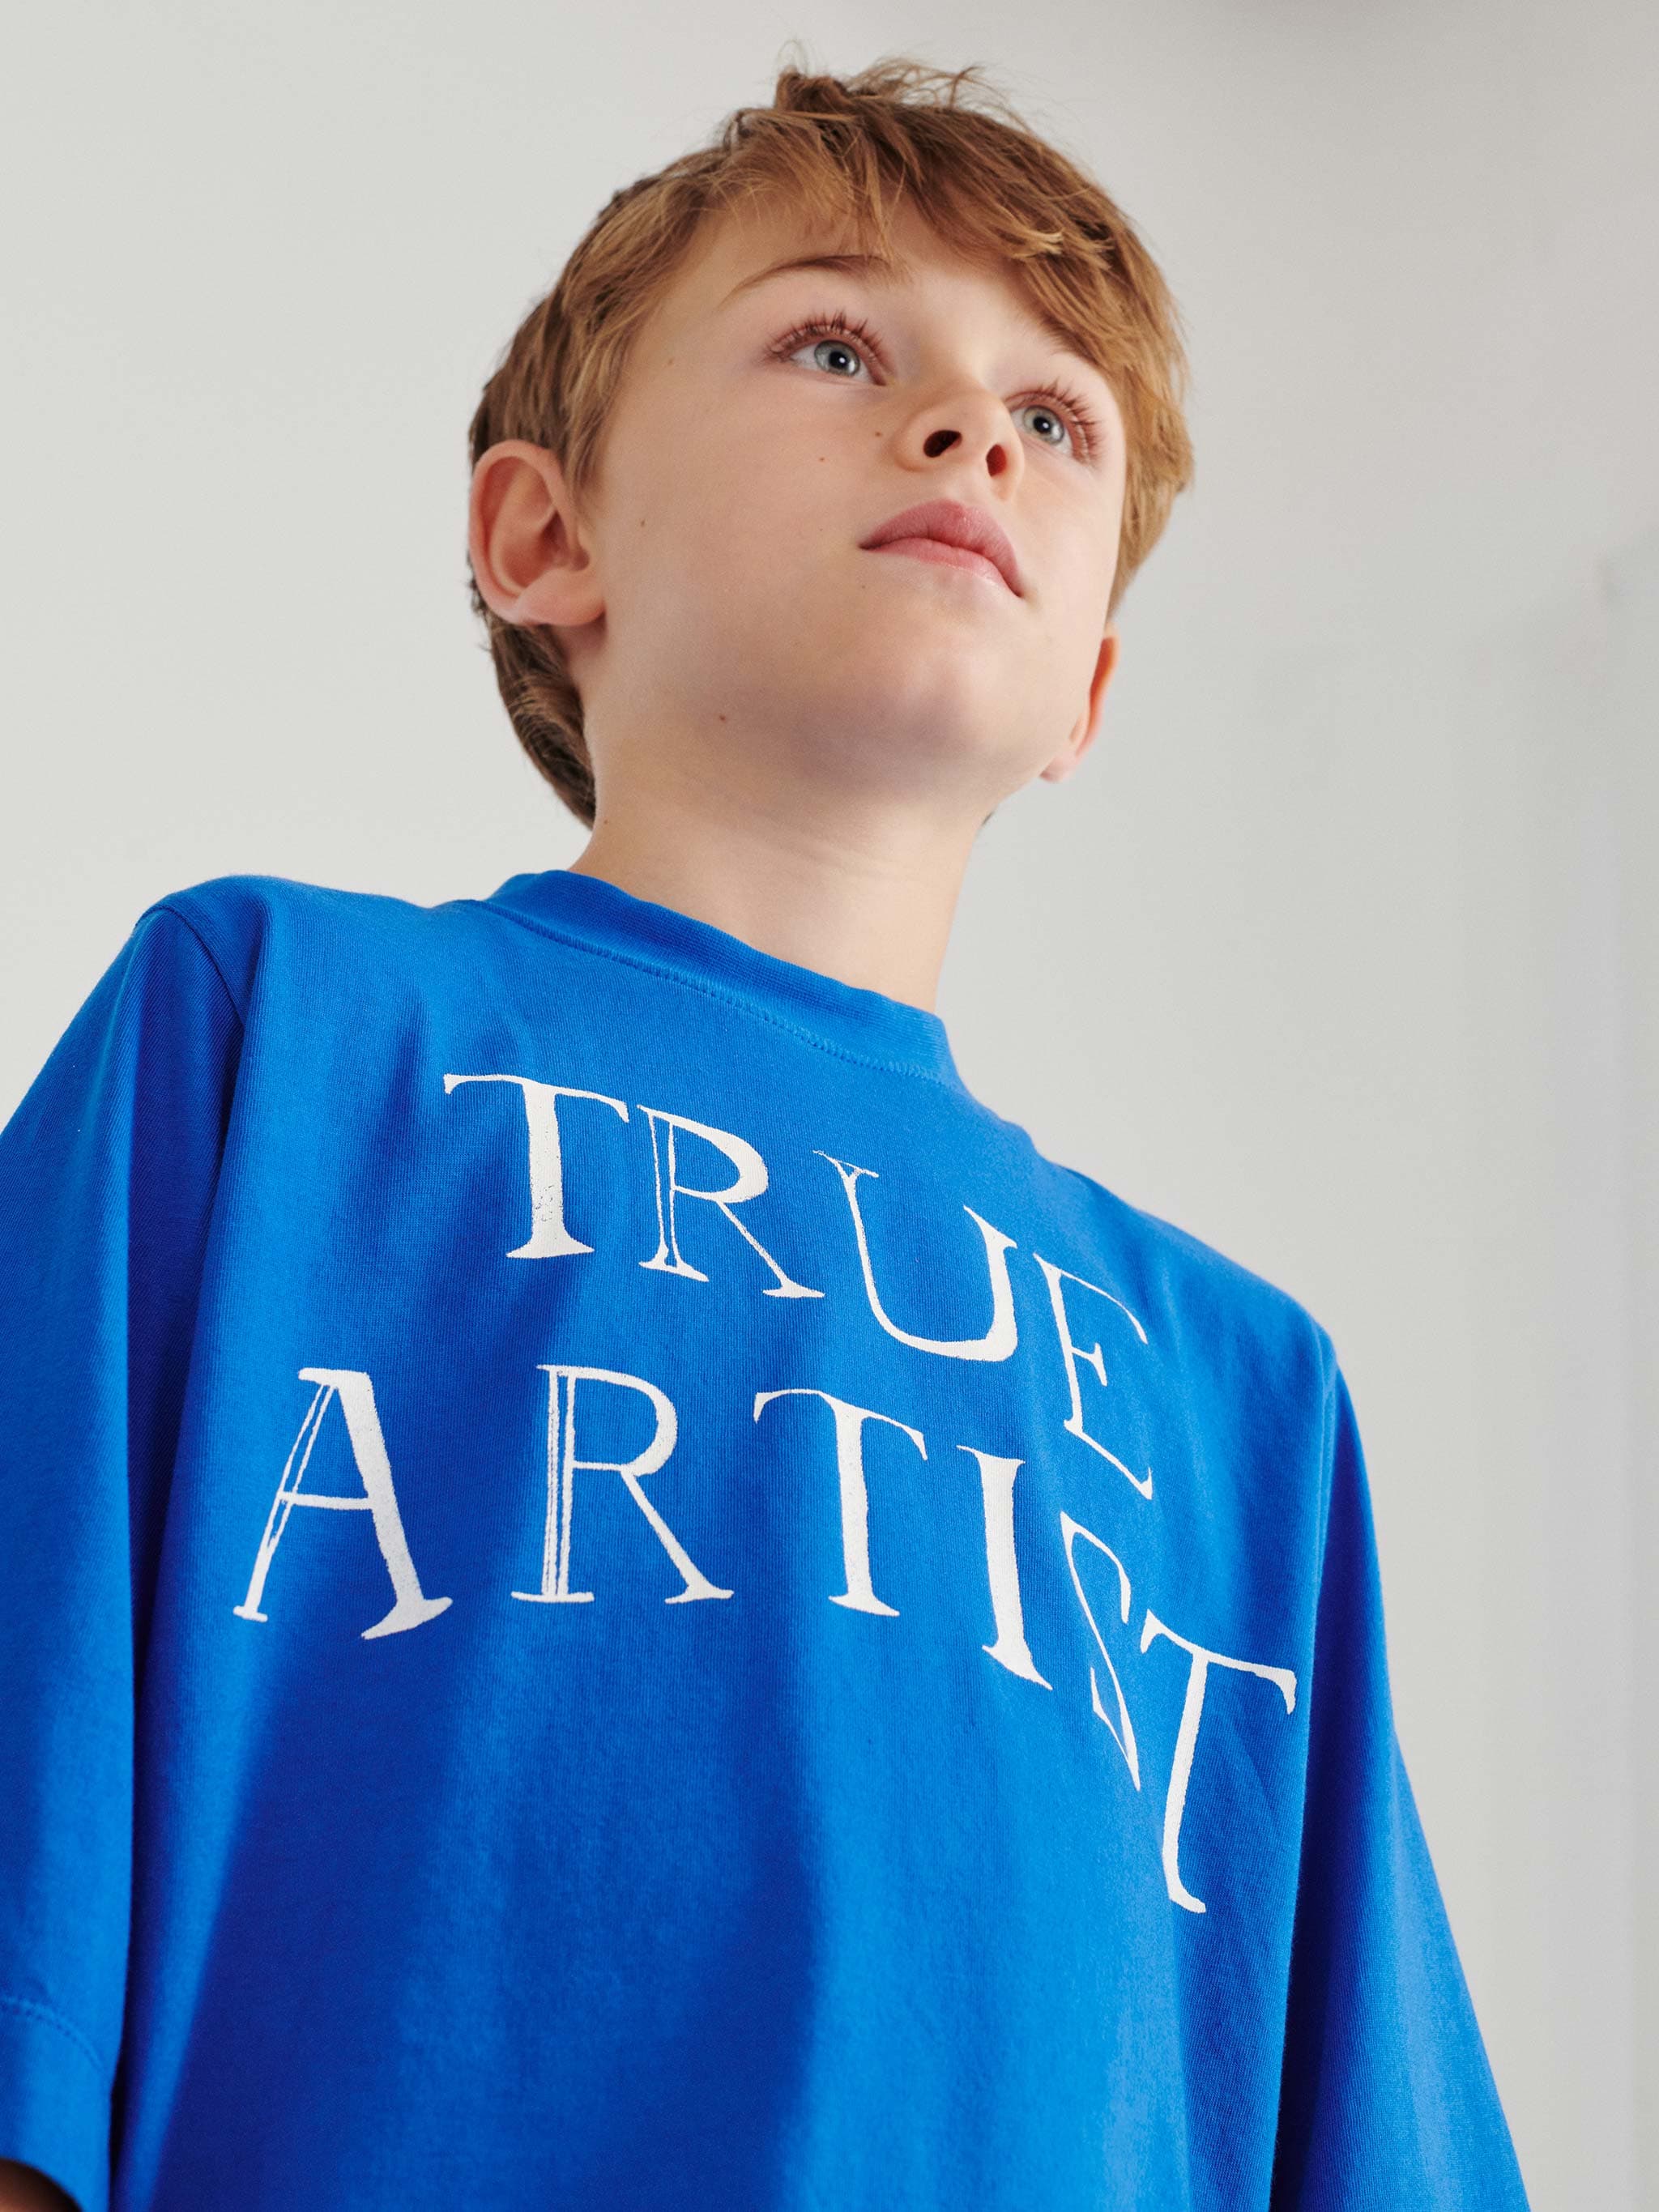 TRUE ARTIST / T-shirt nº10 Sapphire Blue